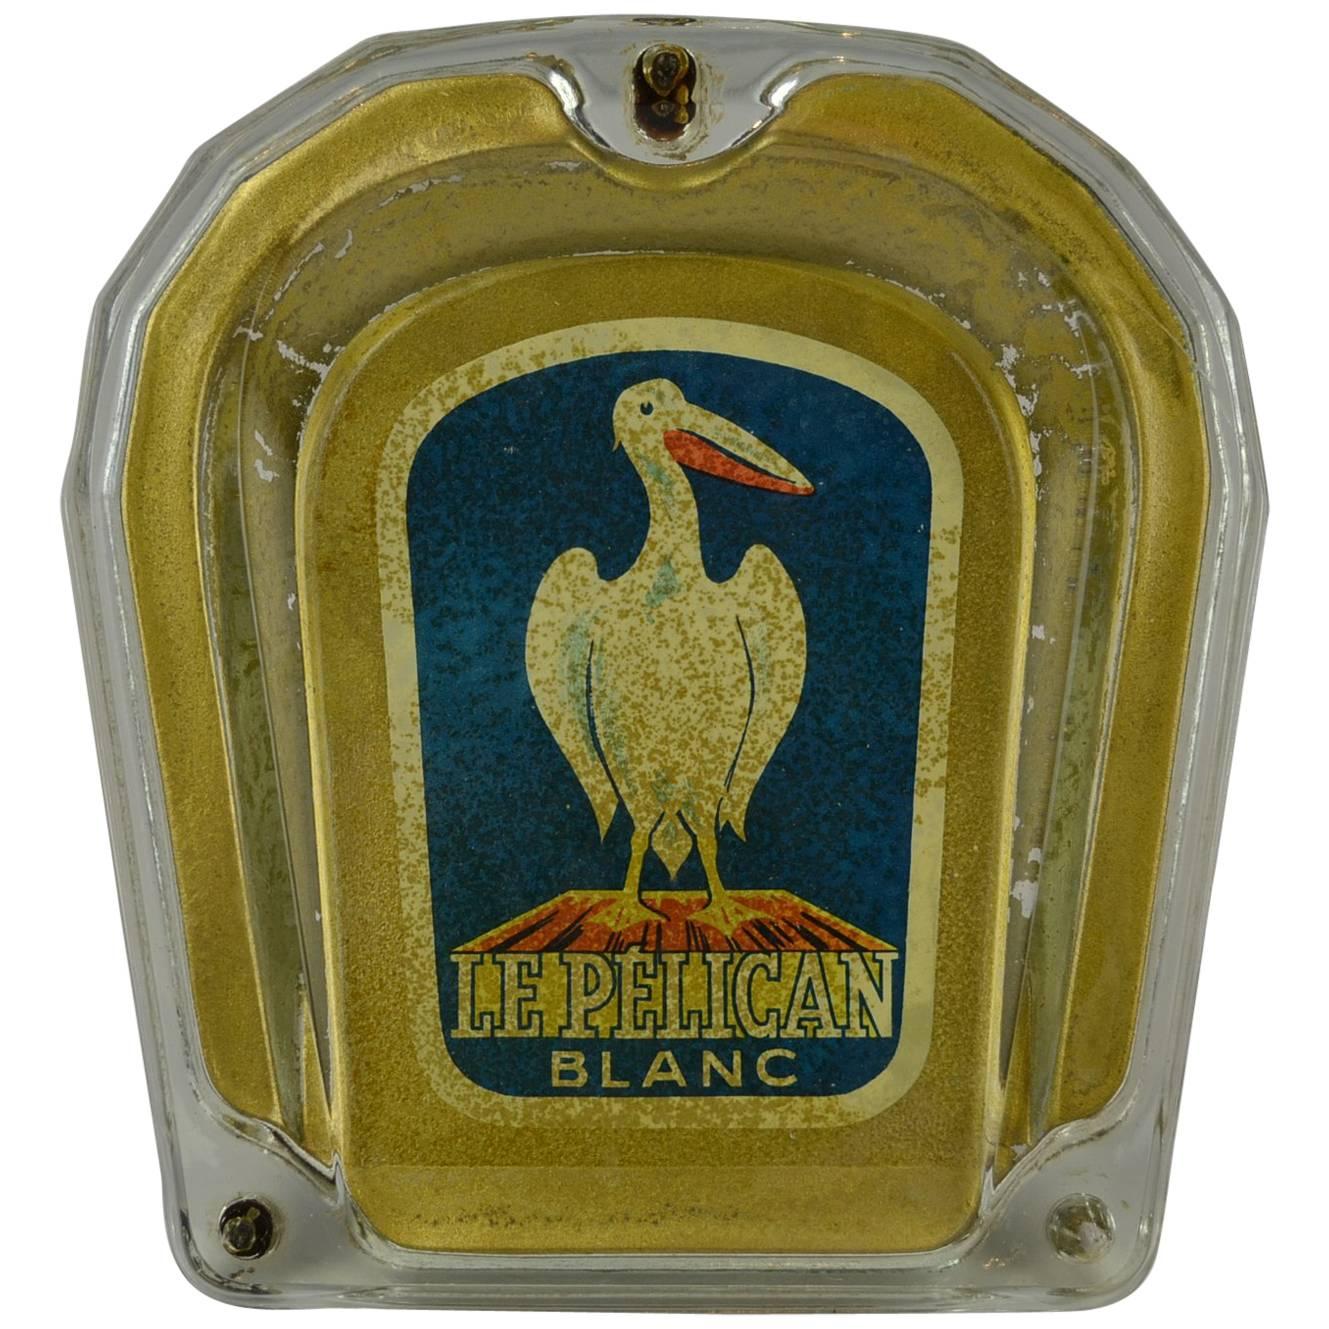 Pelican Blanc Glass Money Valve with Pelican Bird, Switzerland, 1950s